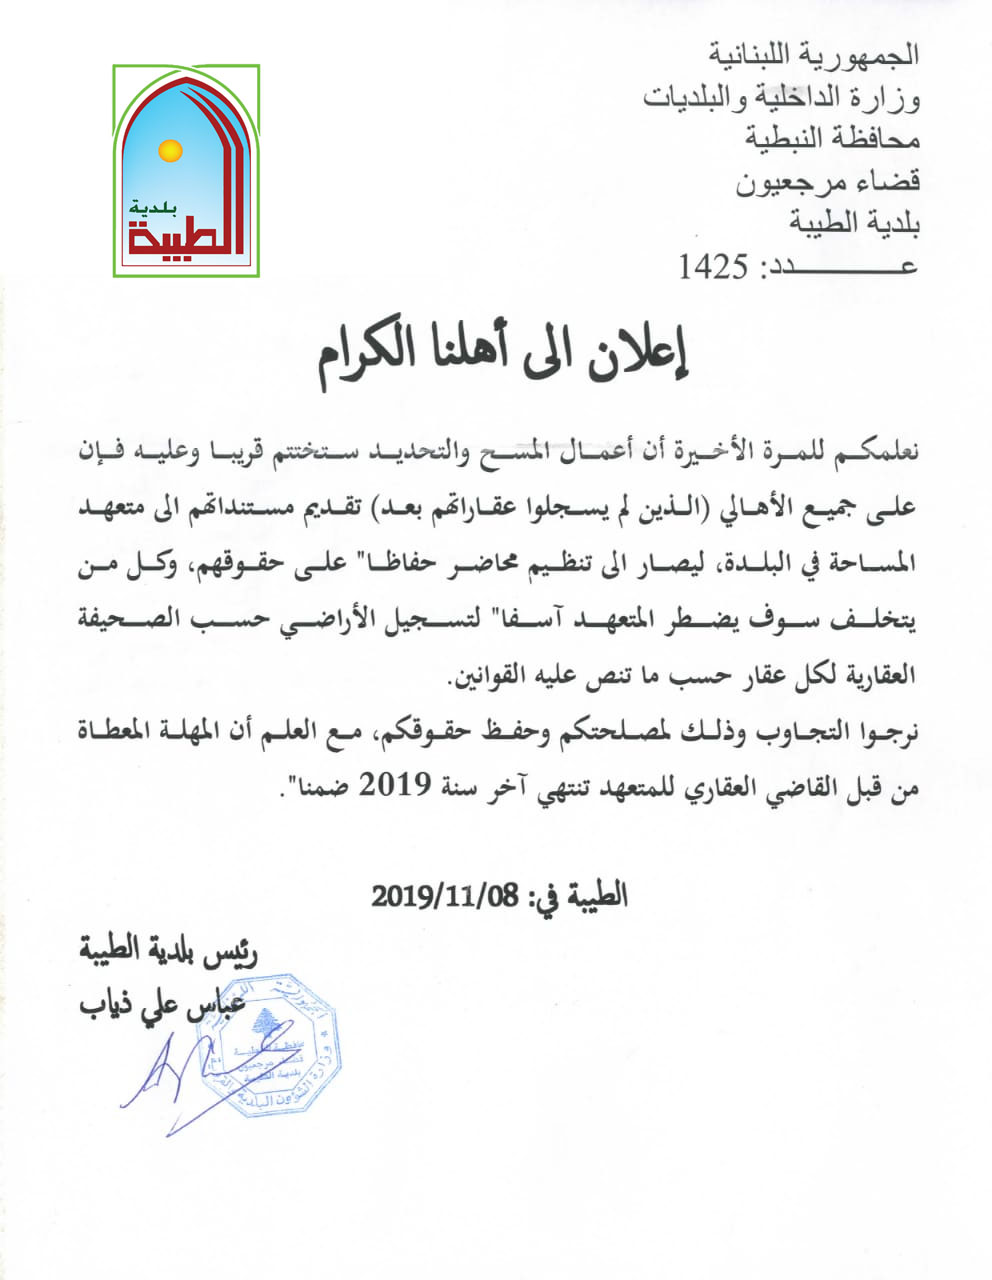 اعلان أخير من بلدية الطيبة حول اعمال المسح والتحديد في بلدة الطيبة